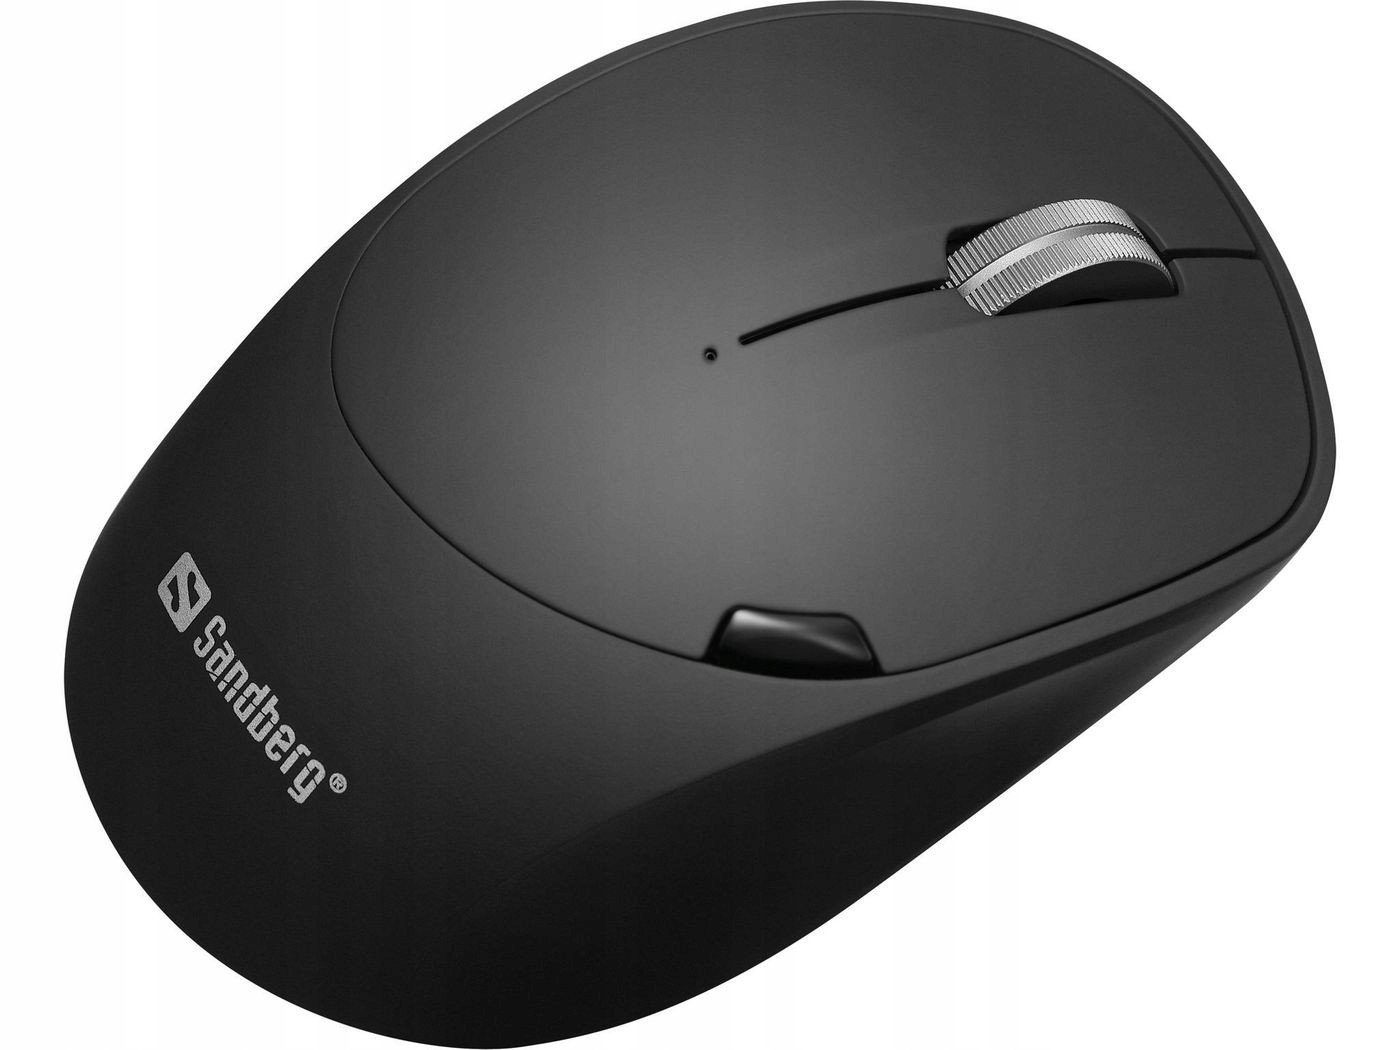 Nabíjení bezdrátové myši Sandberg Wireless Mouse Pro